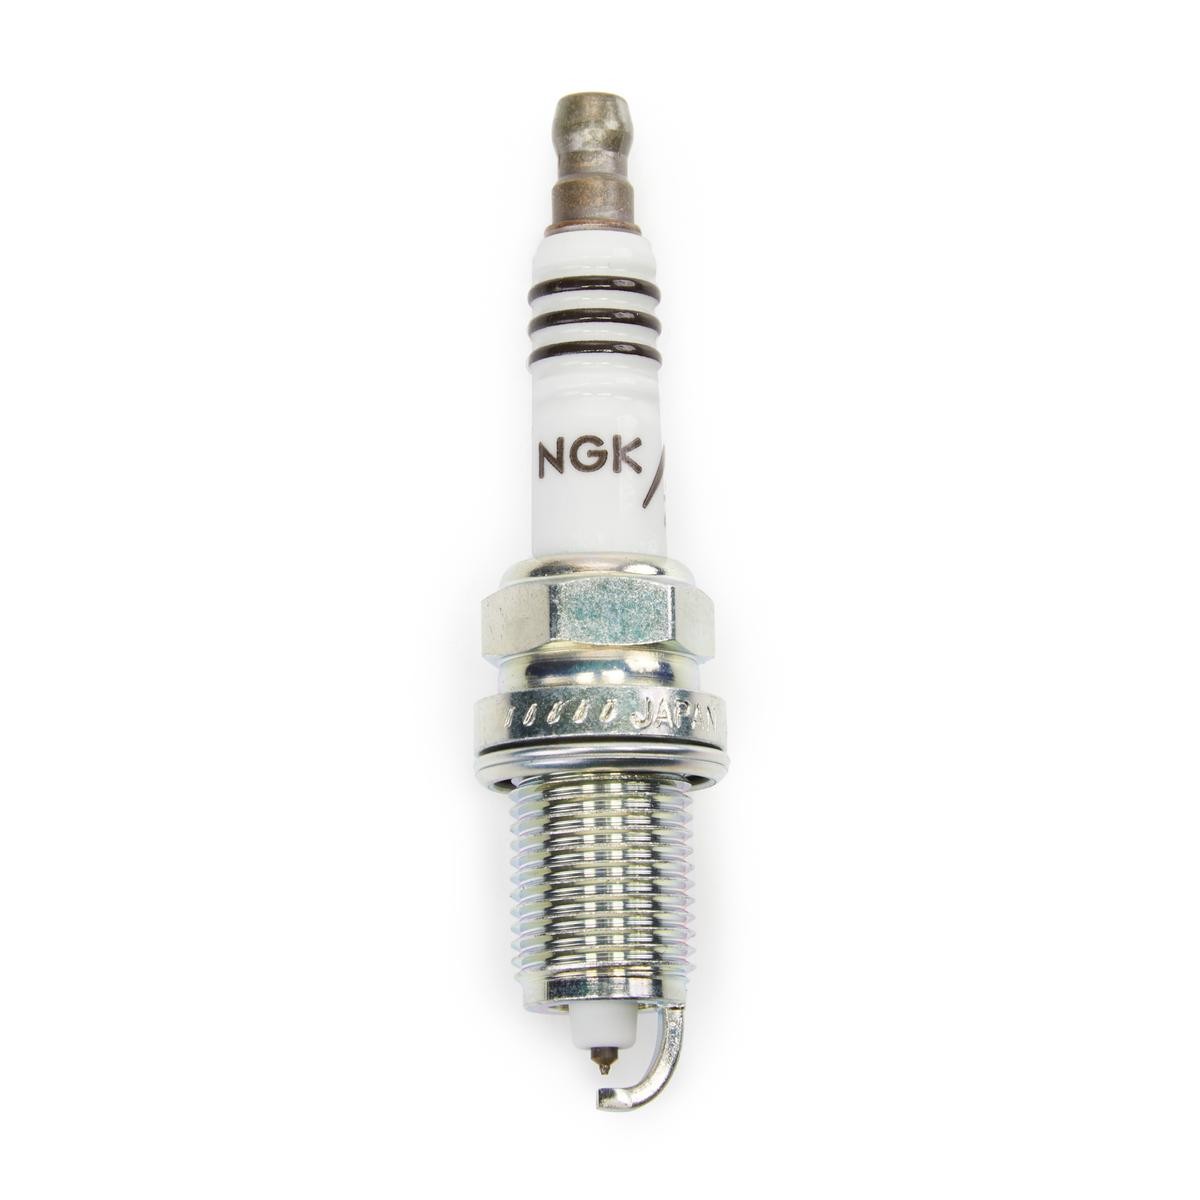 NGK 6441 Spark plug M14 x 1,25, Spanner Size: 16 mm